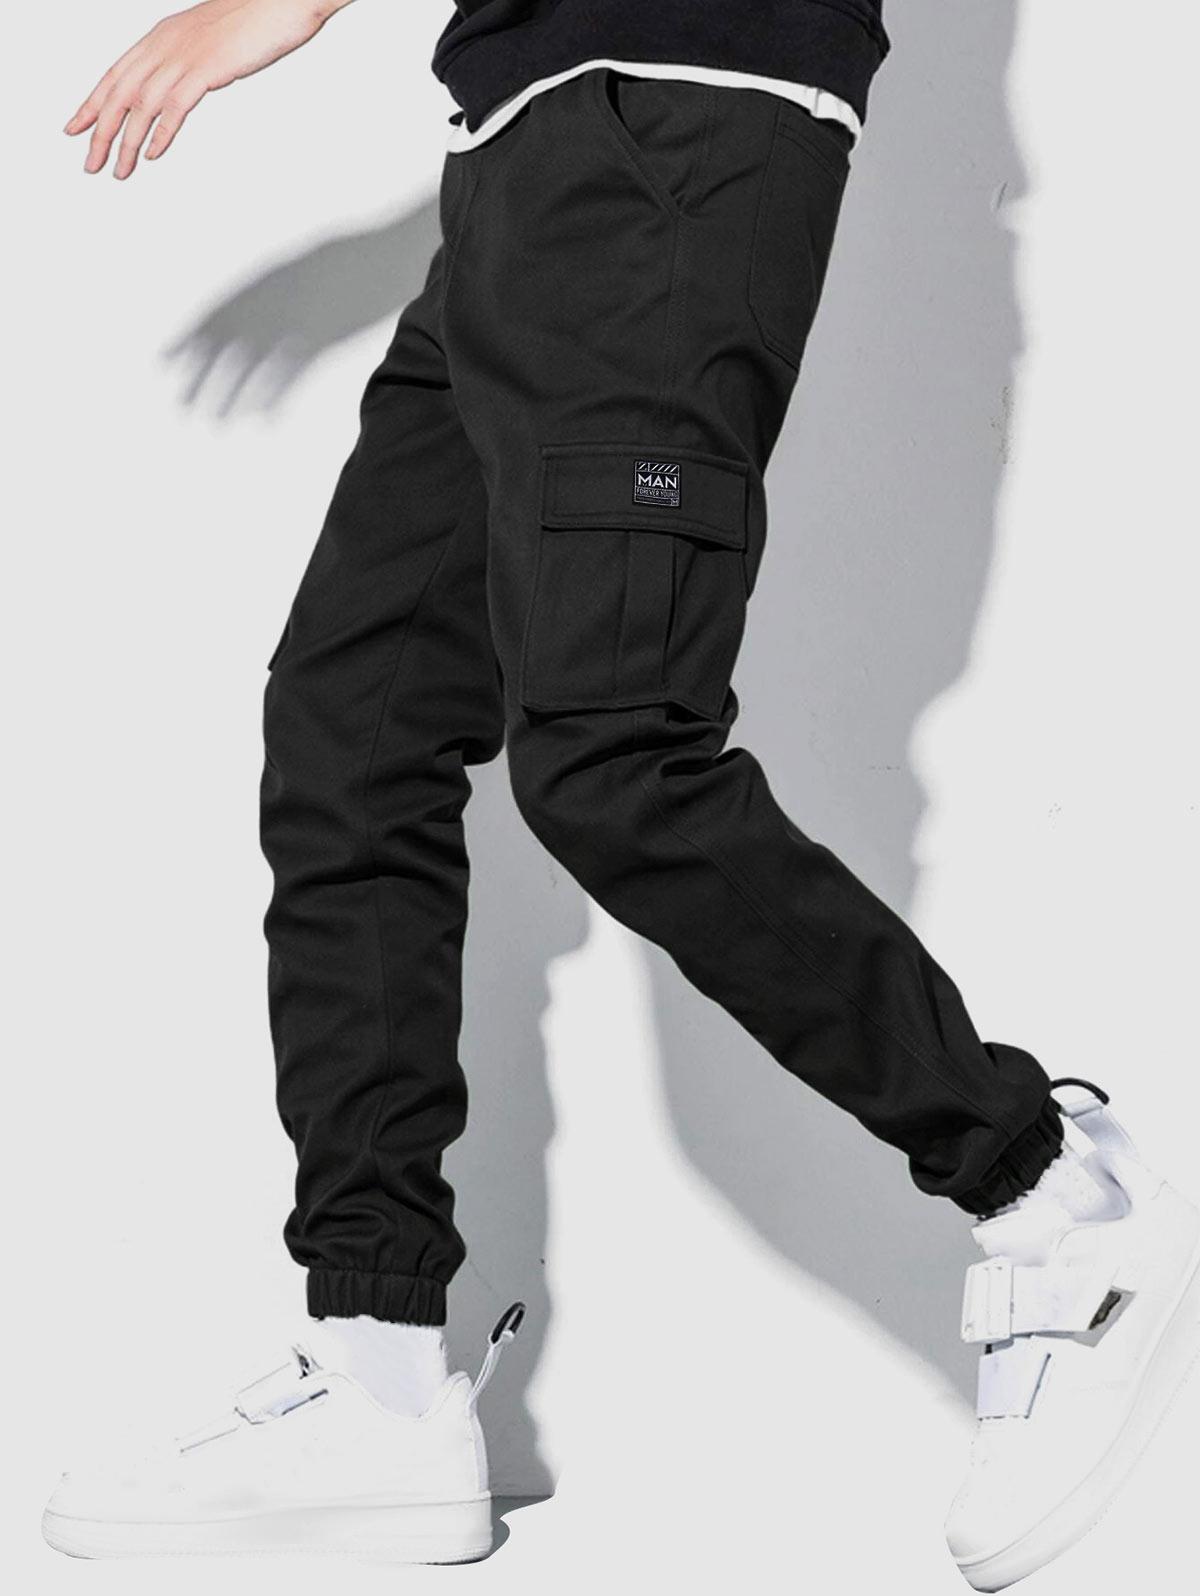 ZAFUL Men's ZAFUL Solid Color Pockets Beam Feet Streetwear Cargo Pants Xxl Black